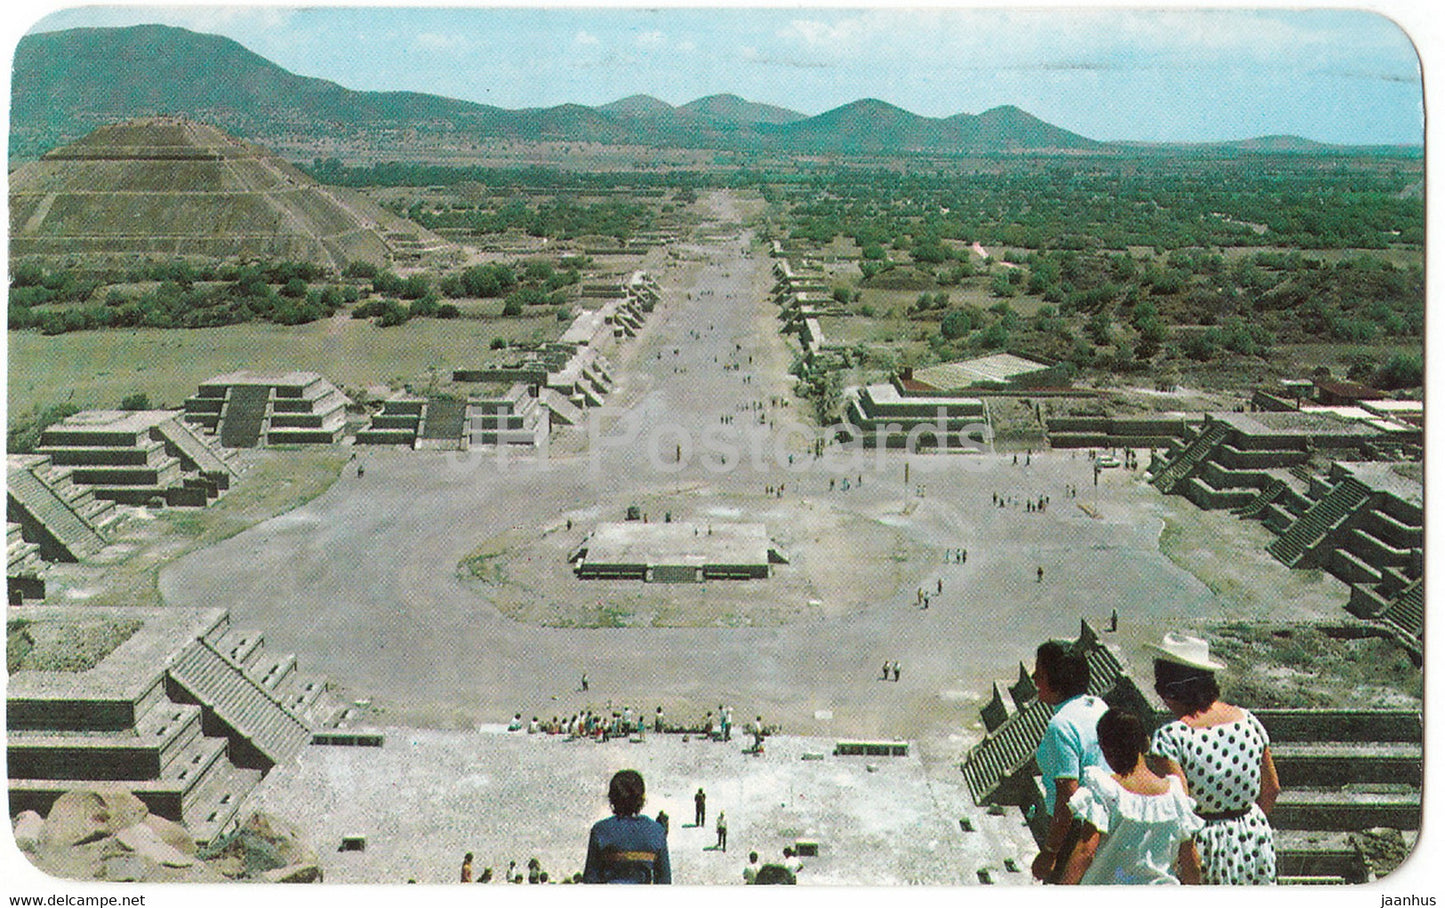 La Plaza de la Luna y la Calzada de los Muertos - Plaza of the Moon - Ave. of the Dead - pyramid - 1982 - Mexico - used - JH Postcards